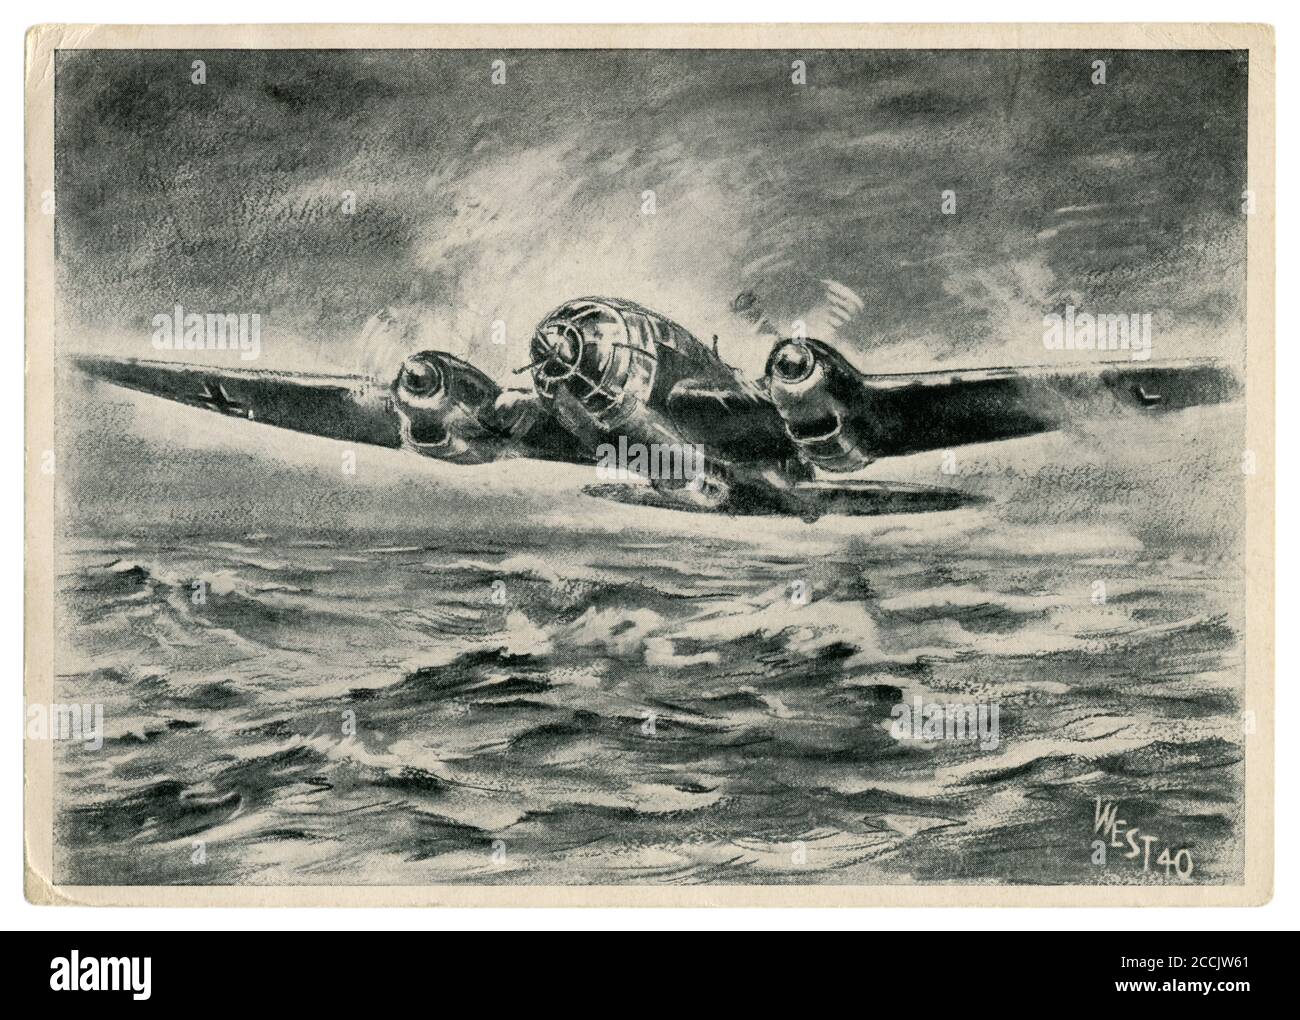 Deutsche historische Postkarte: Ein Bomber Heinkel He 111 über den rauen Gewässern der Nordsee fliegt, um die Städte Englands zu bombardieren. Schlacht von Großbritannien Stockfoto